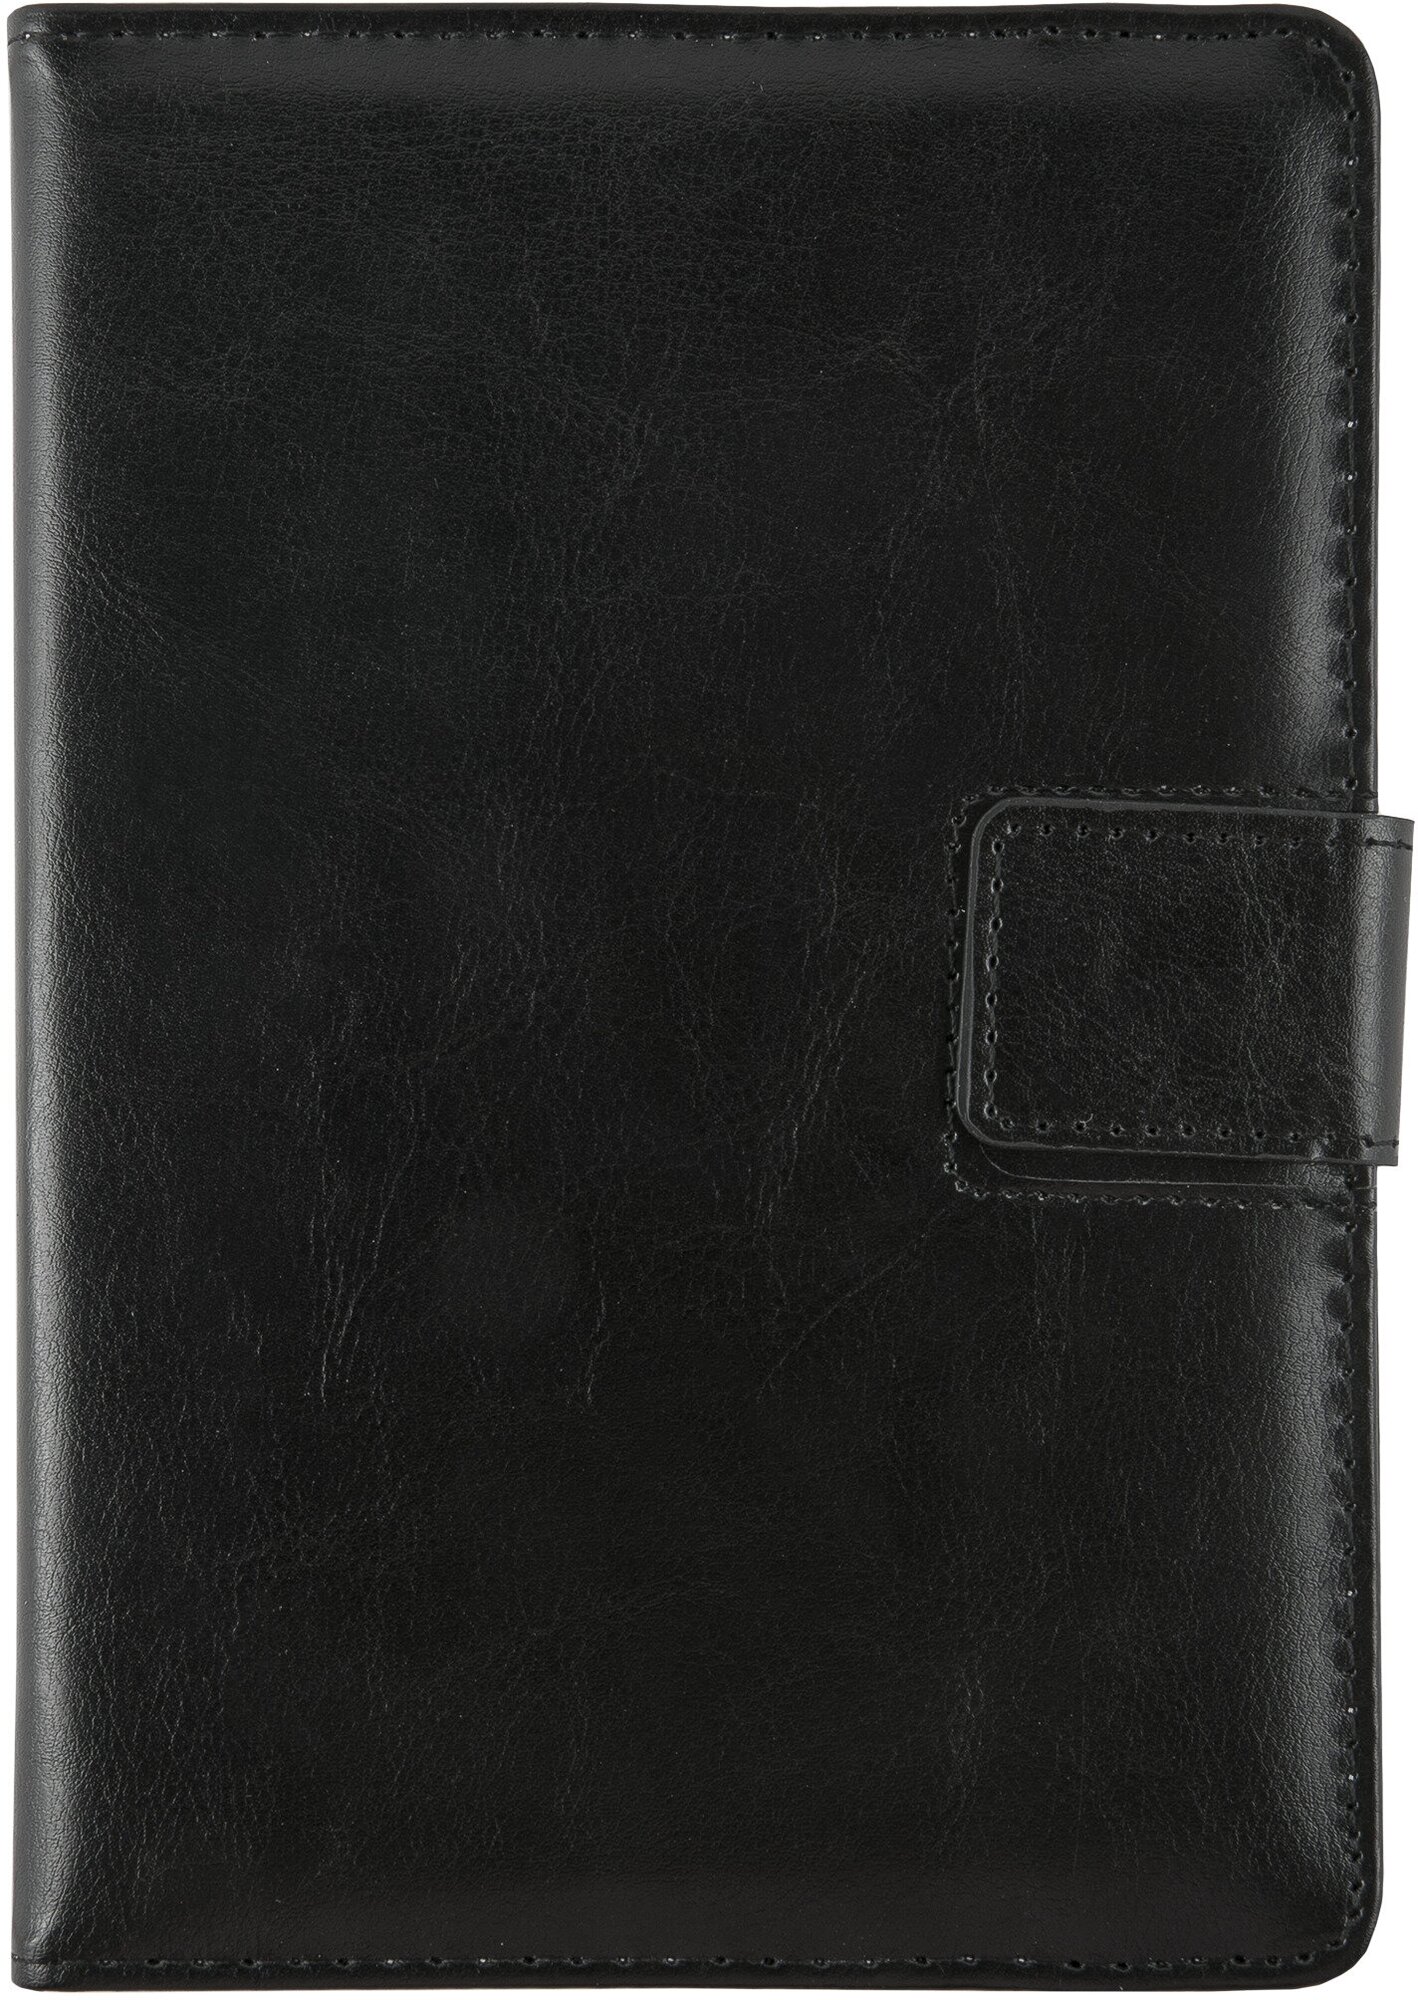 Защитный чехол-книжка для планшета , универсальный, для планшетов 7" (черный)